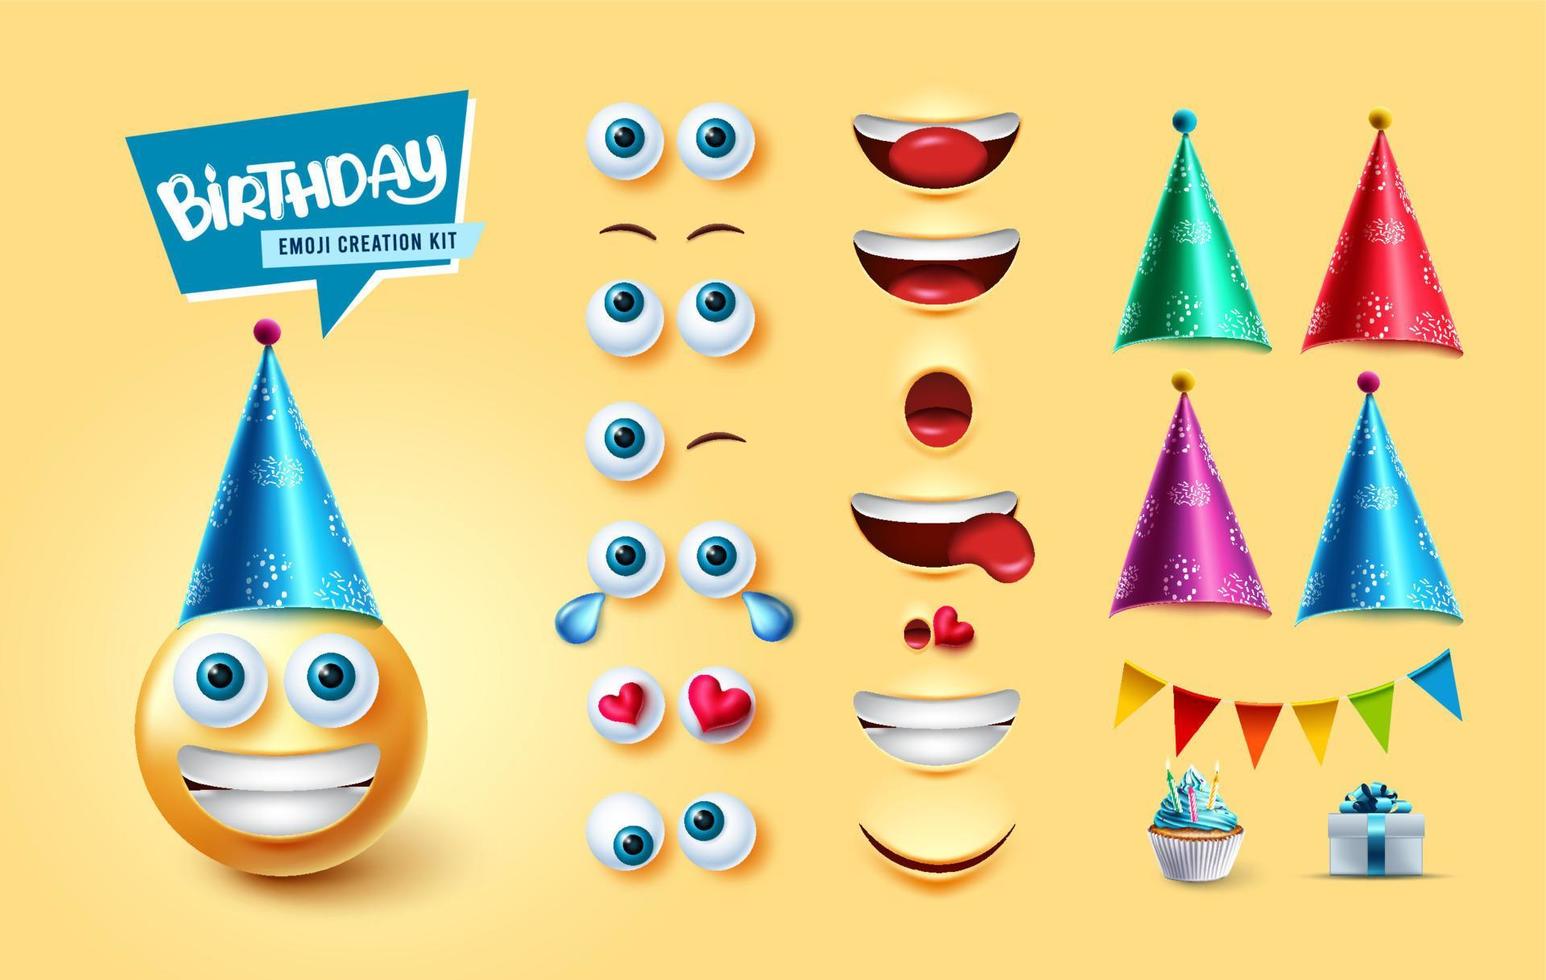 verjaardag emojis kit maker vector set. emoji 3D-verjaardagspersonage met bewerkbare gezichtsdelen en elementen zoals feestmutsen, wimpels en cadeau voor een schattig gezichtsreactiecollectieontwerp.